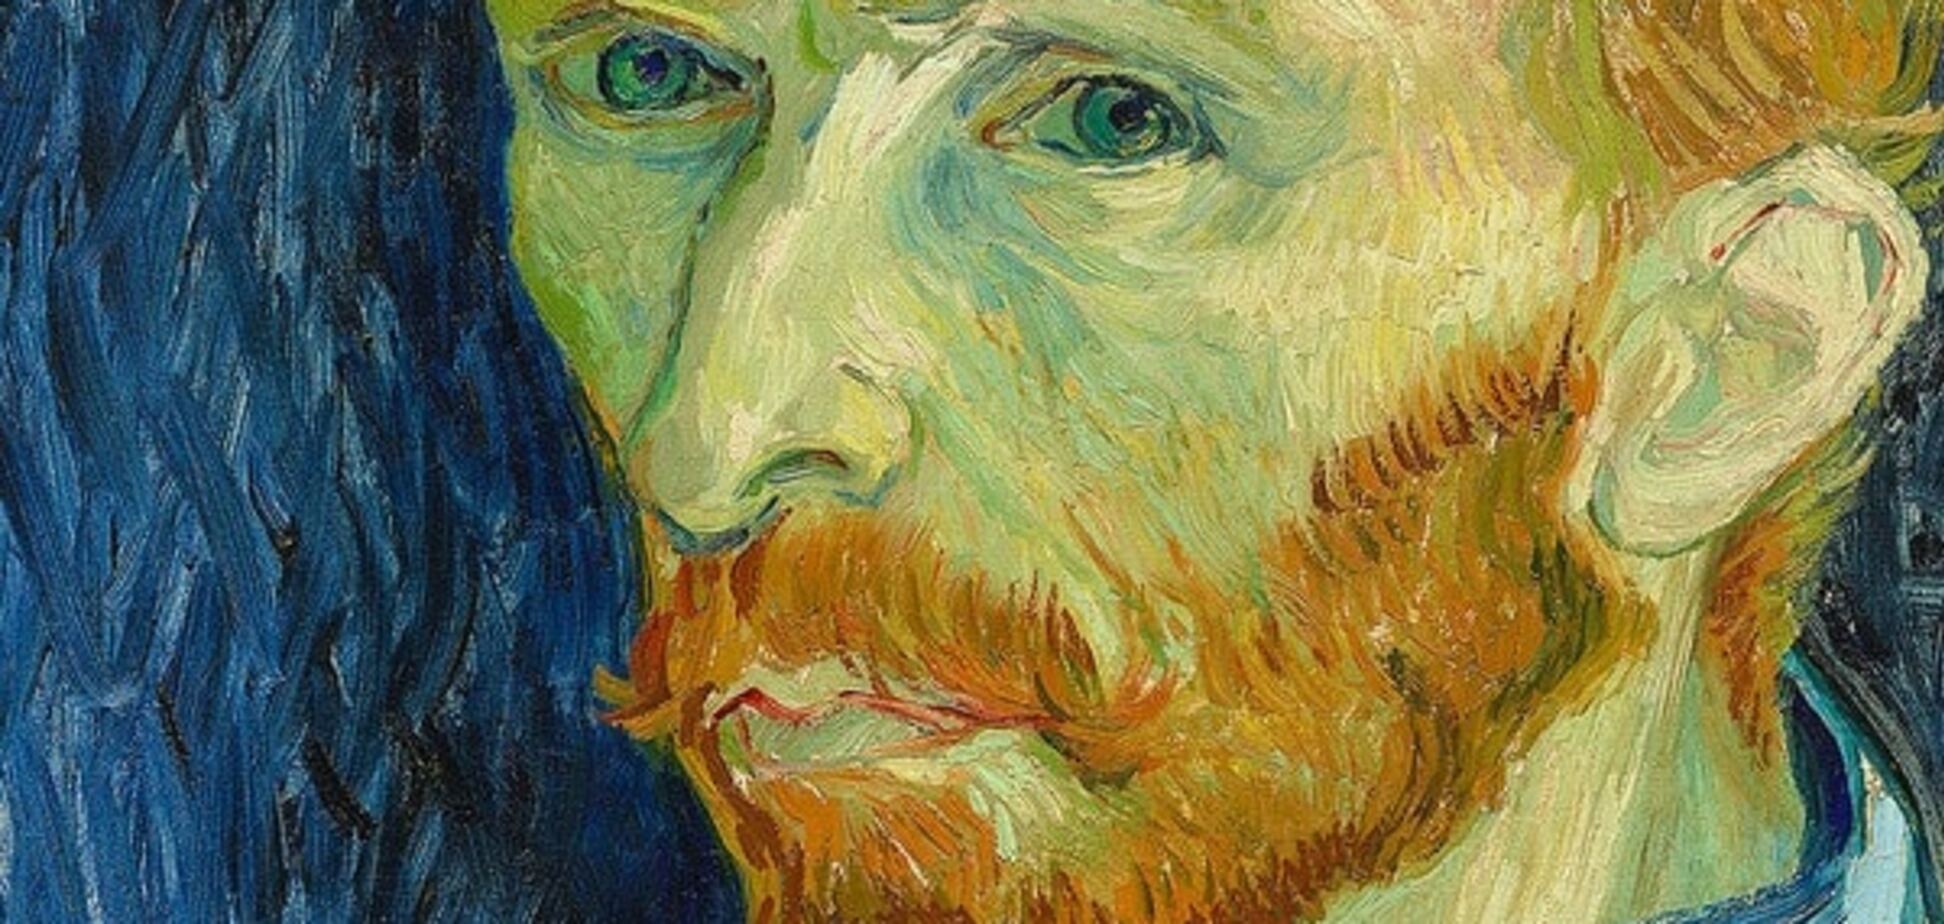 Ценители: украденные картины Ван Гога нашли у неаполитанской мафии